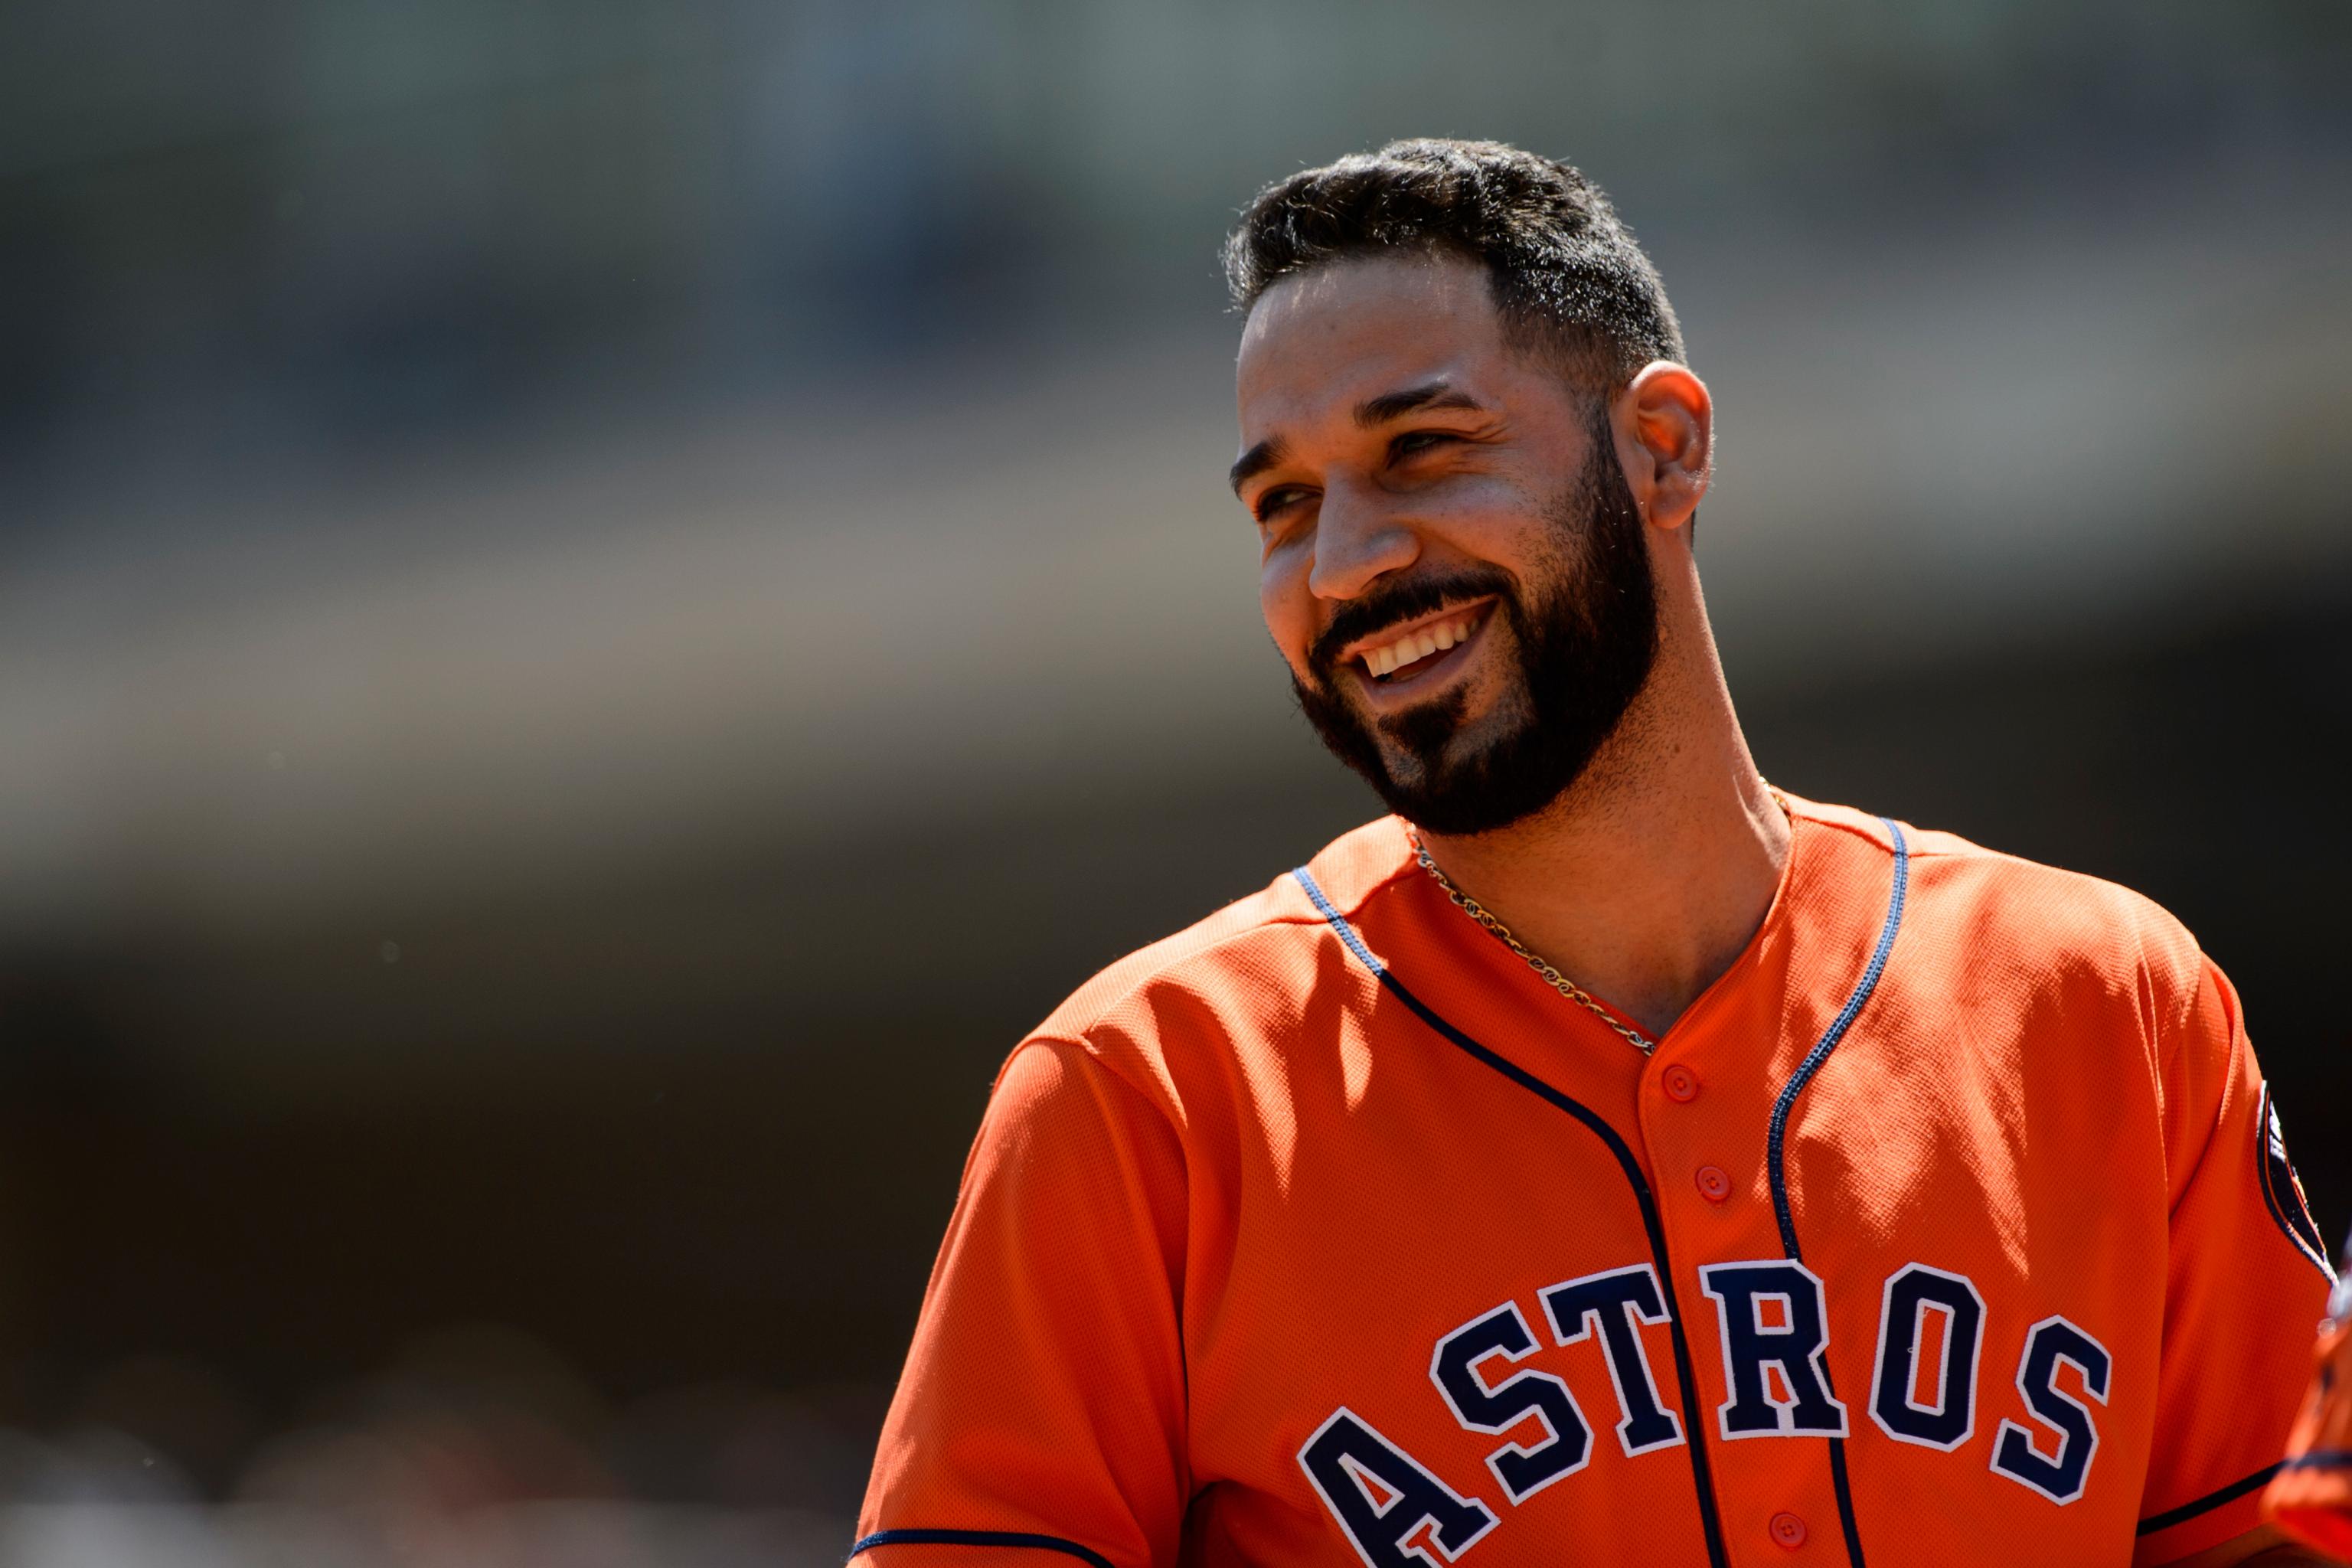 Astros sign fan favorite Marwin Gonzalez to minor league deal